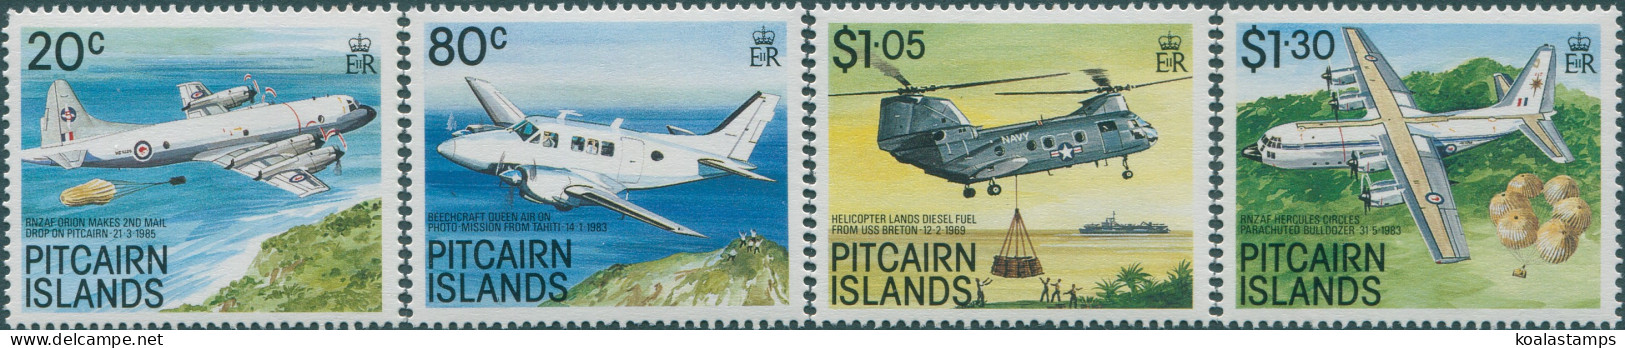 Pitcairn Islands 1989 SG348-351 Aircraft Set MNH - Pitcairn